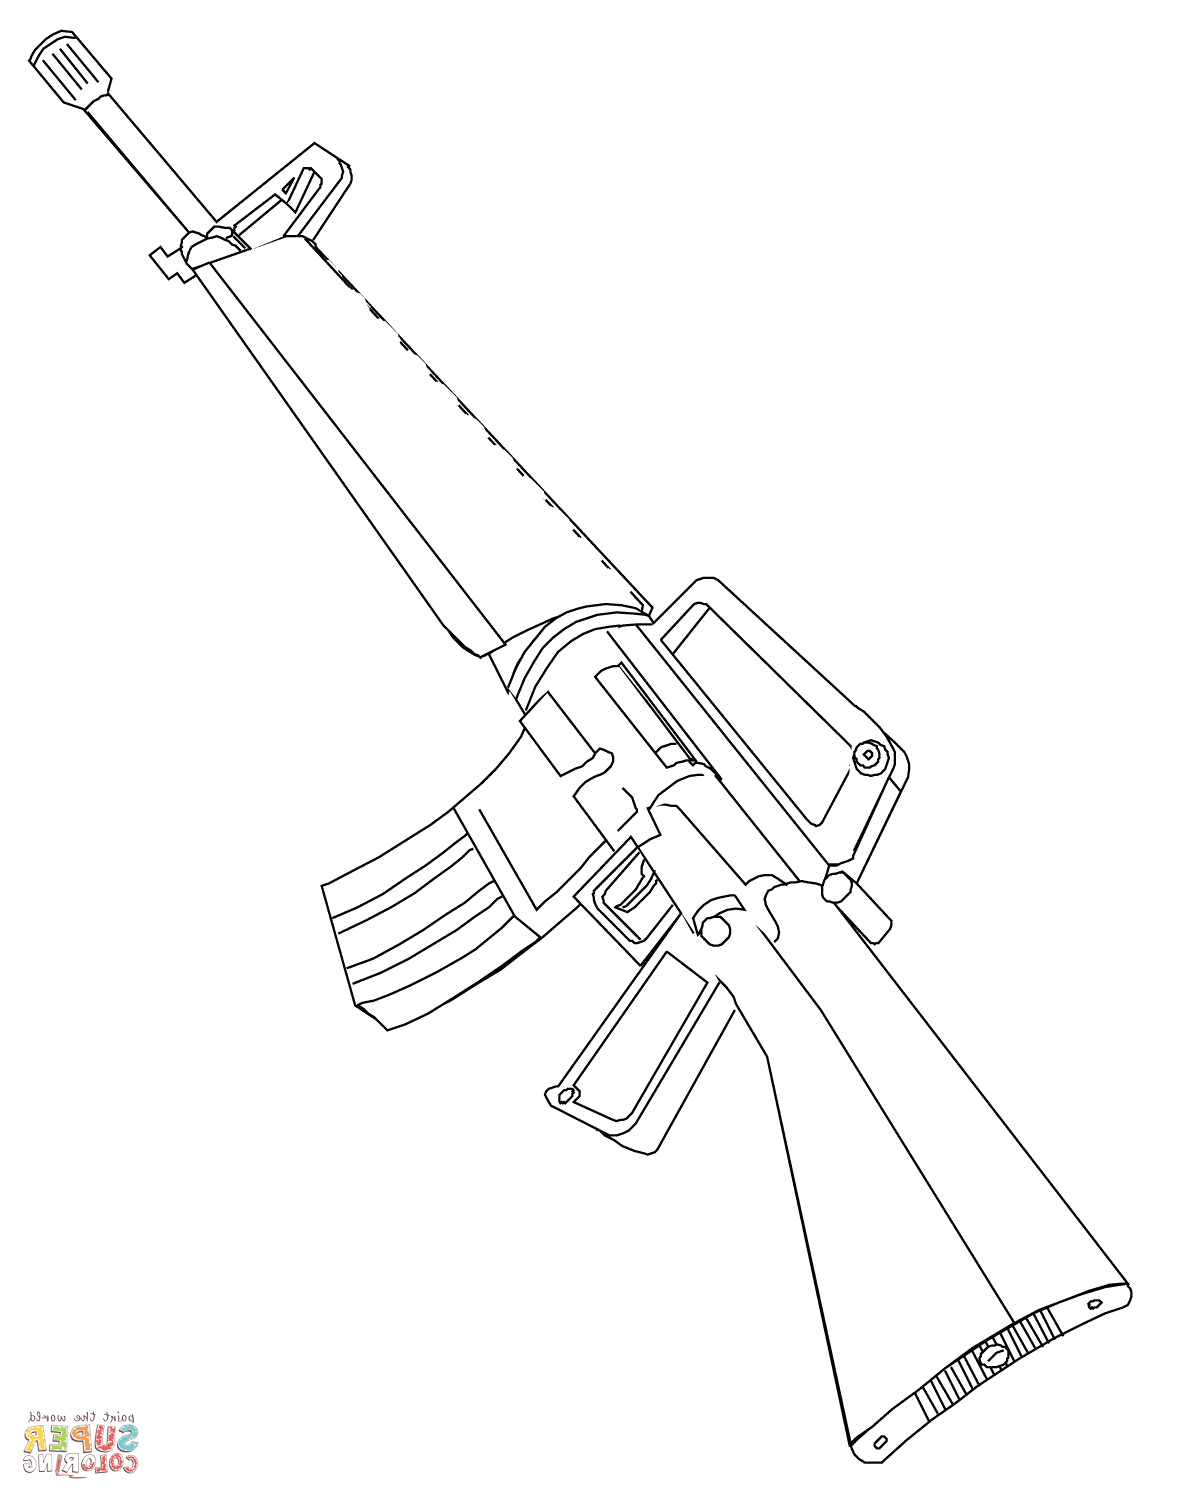 m16 fusil